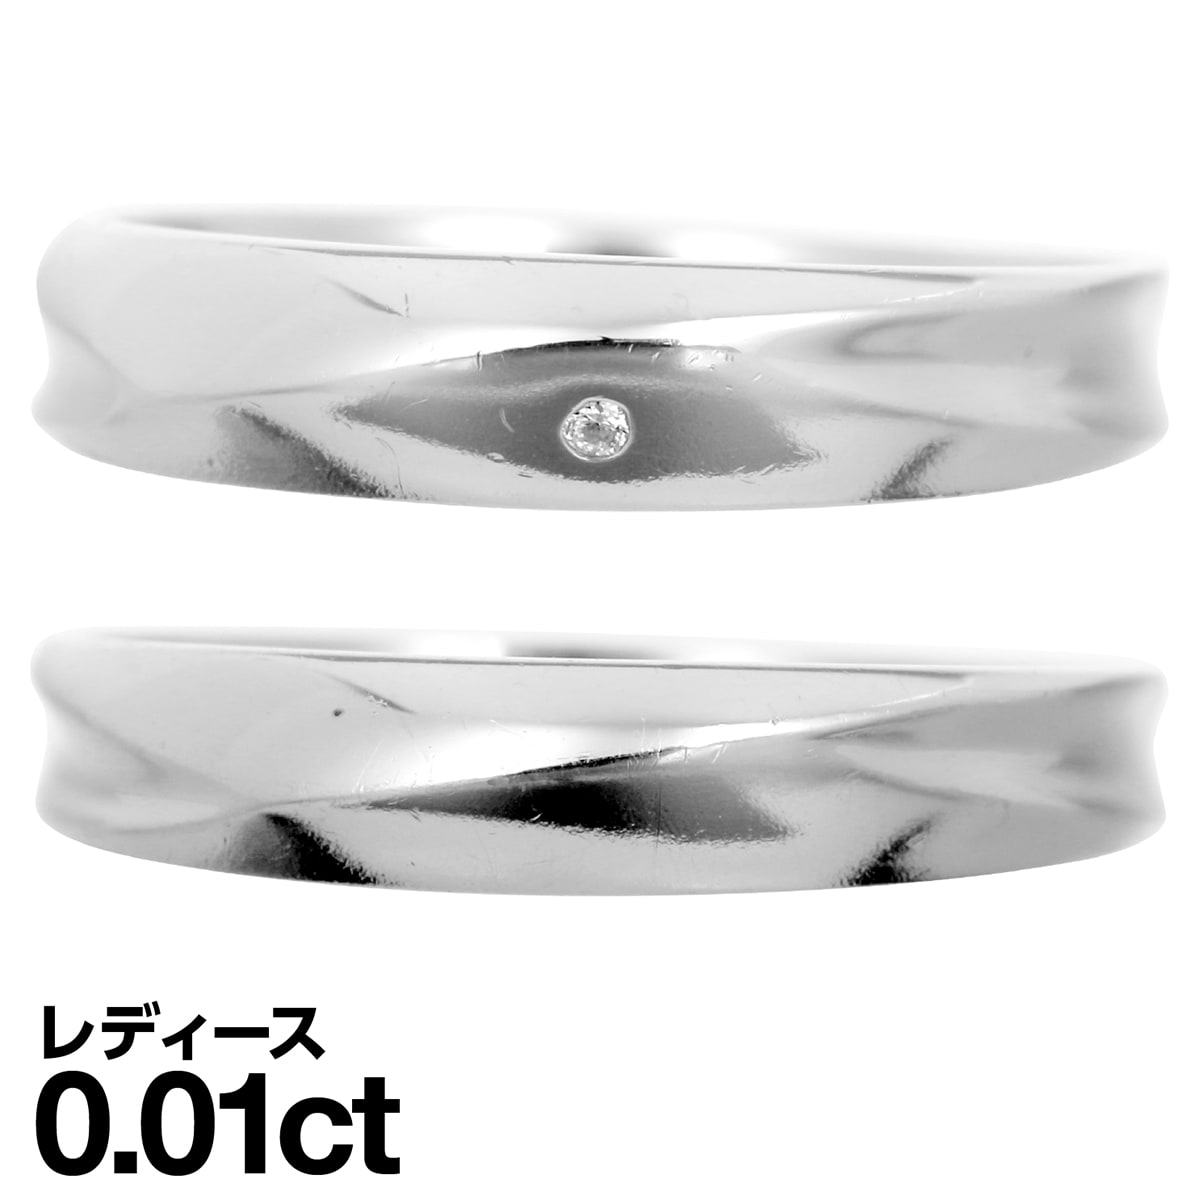 結婚指輪 マリッジリング プラチナ900 ダイヤモンド 2本セット 品質保証書 金属アレルギー 日本製 クリスマス ギフト プレゼント